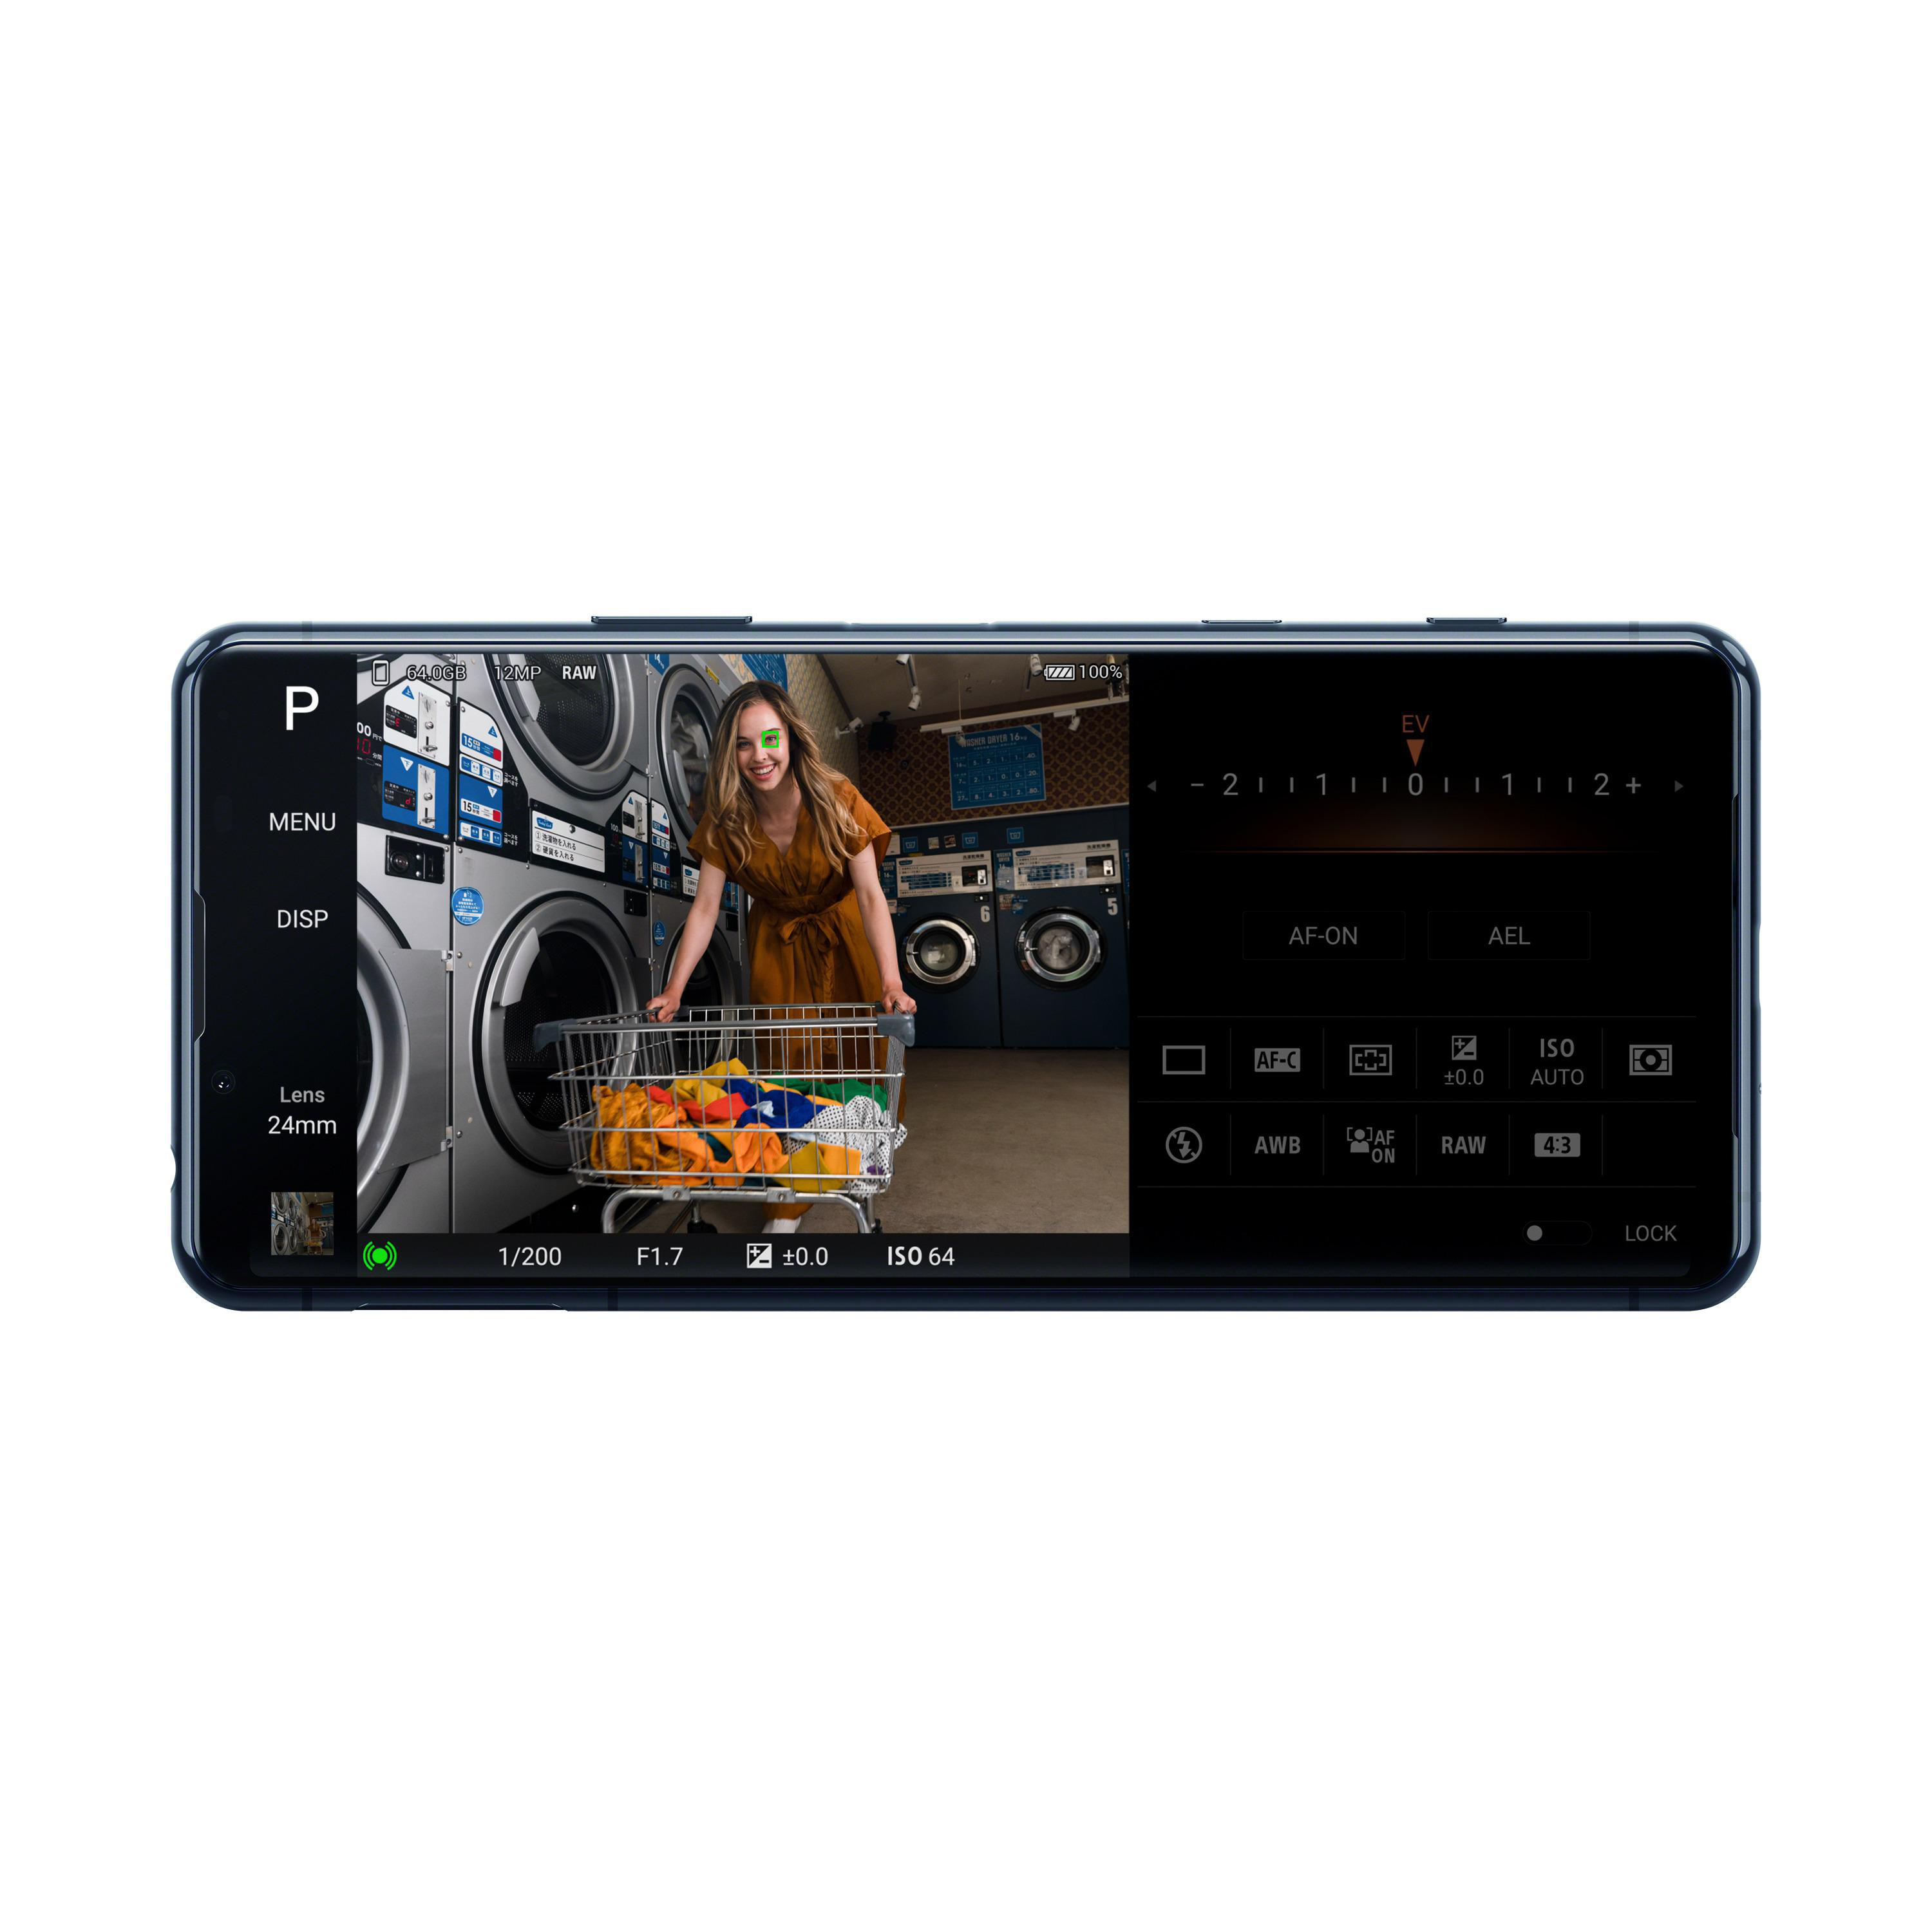 SONY Xperia II Dual 128 5 SIM Schwarz GB 21:9 Display 5G